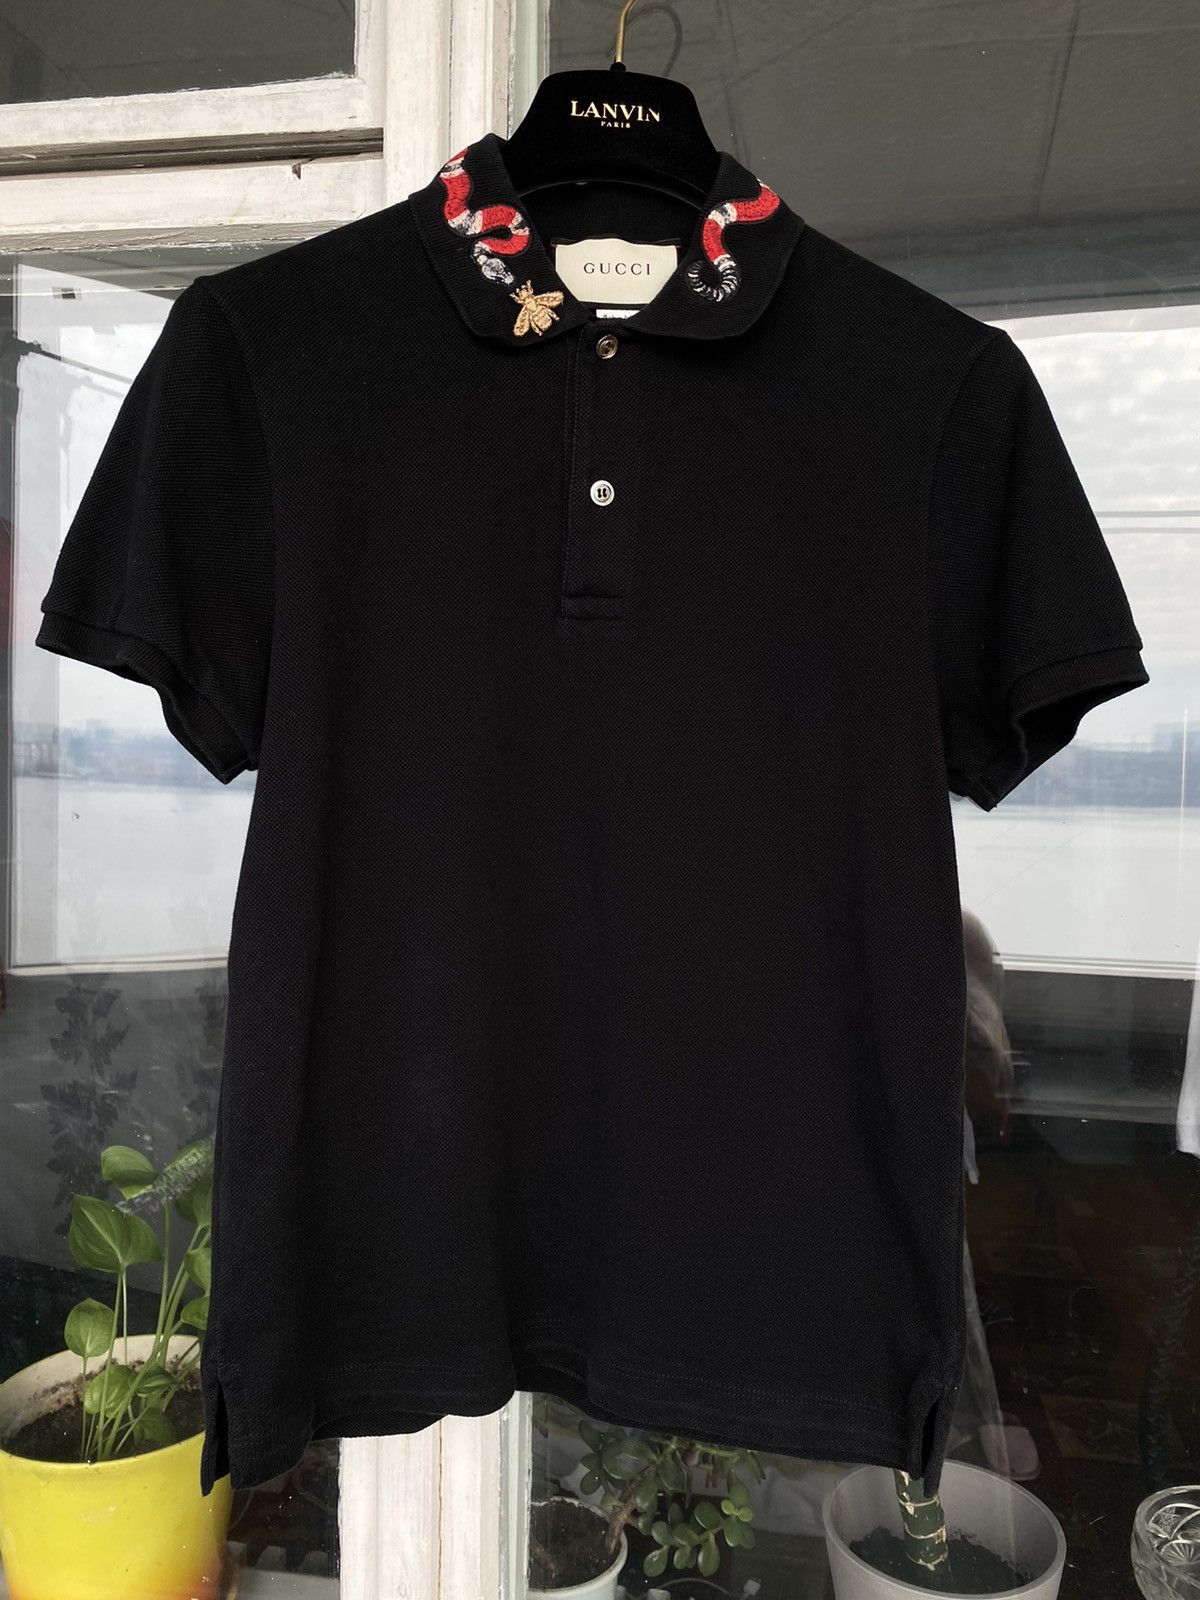 Gucci Monogram Snake Polo Shirt - Tagotee